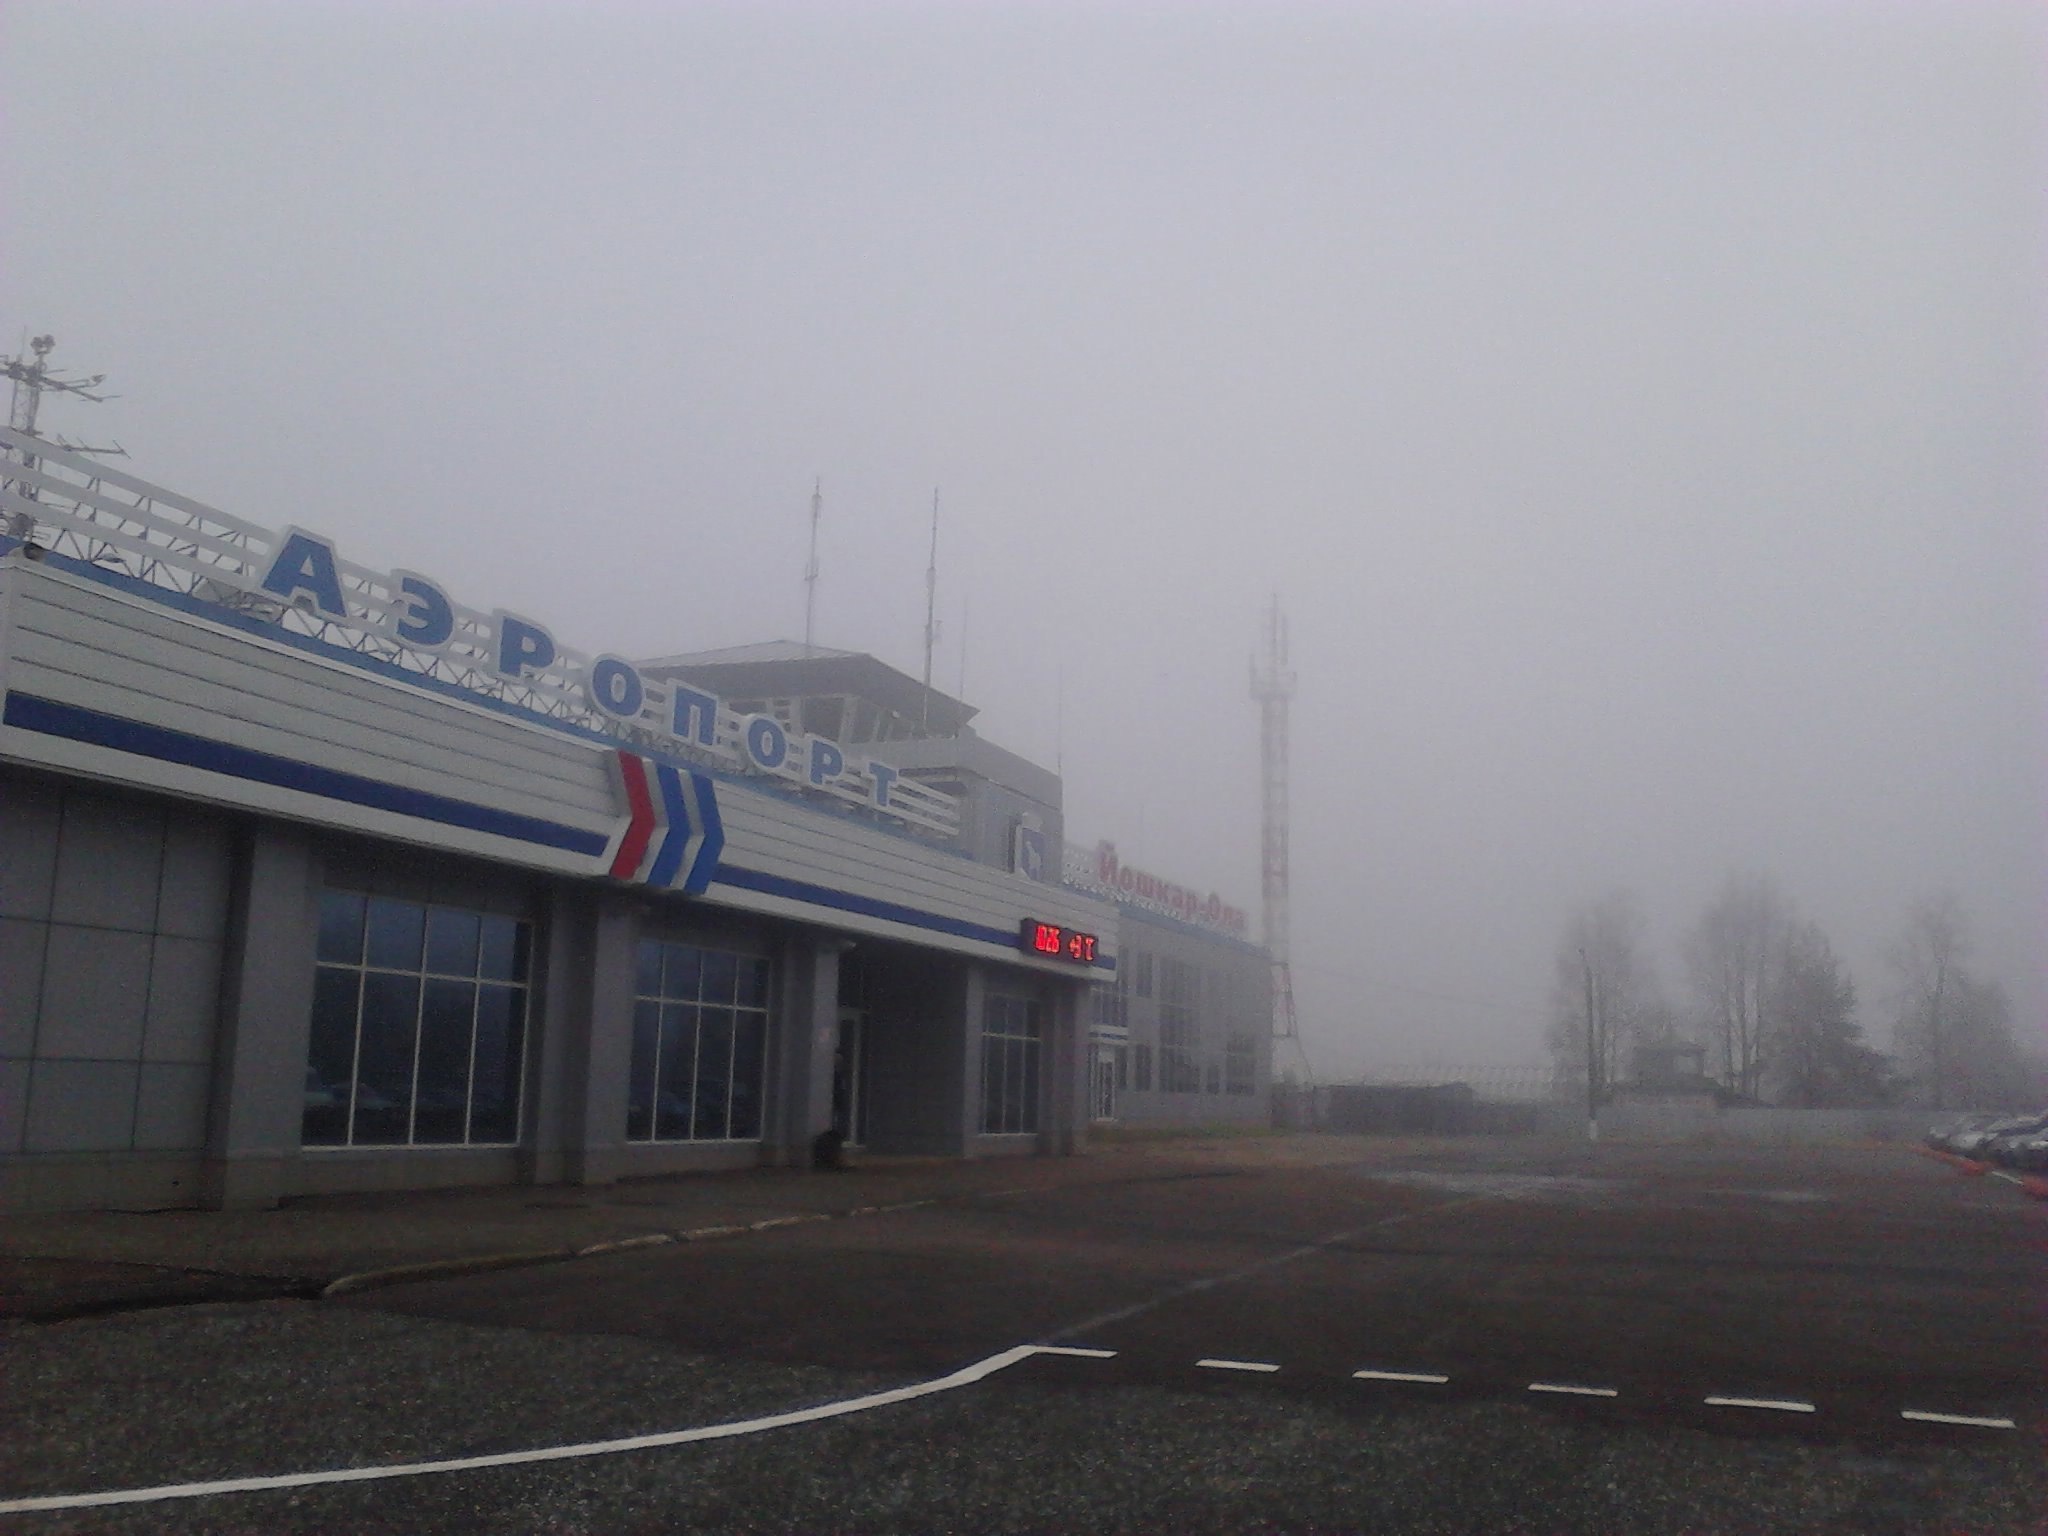 Аэропорт Йошкар-Олы не принимает рейсы из-за тумана